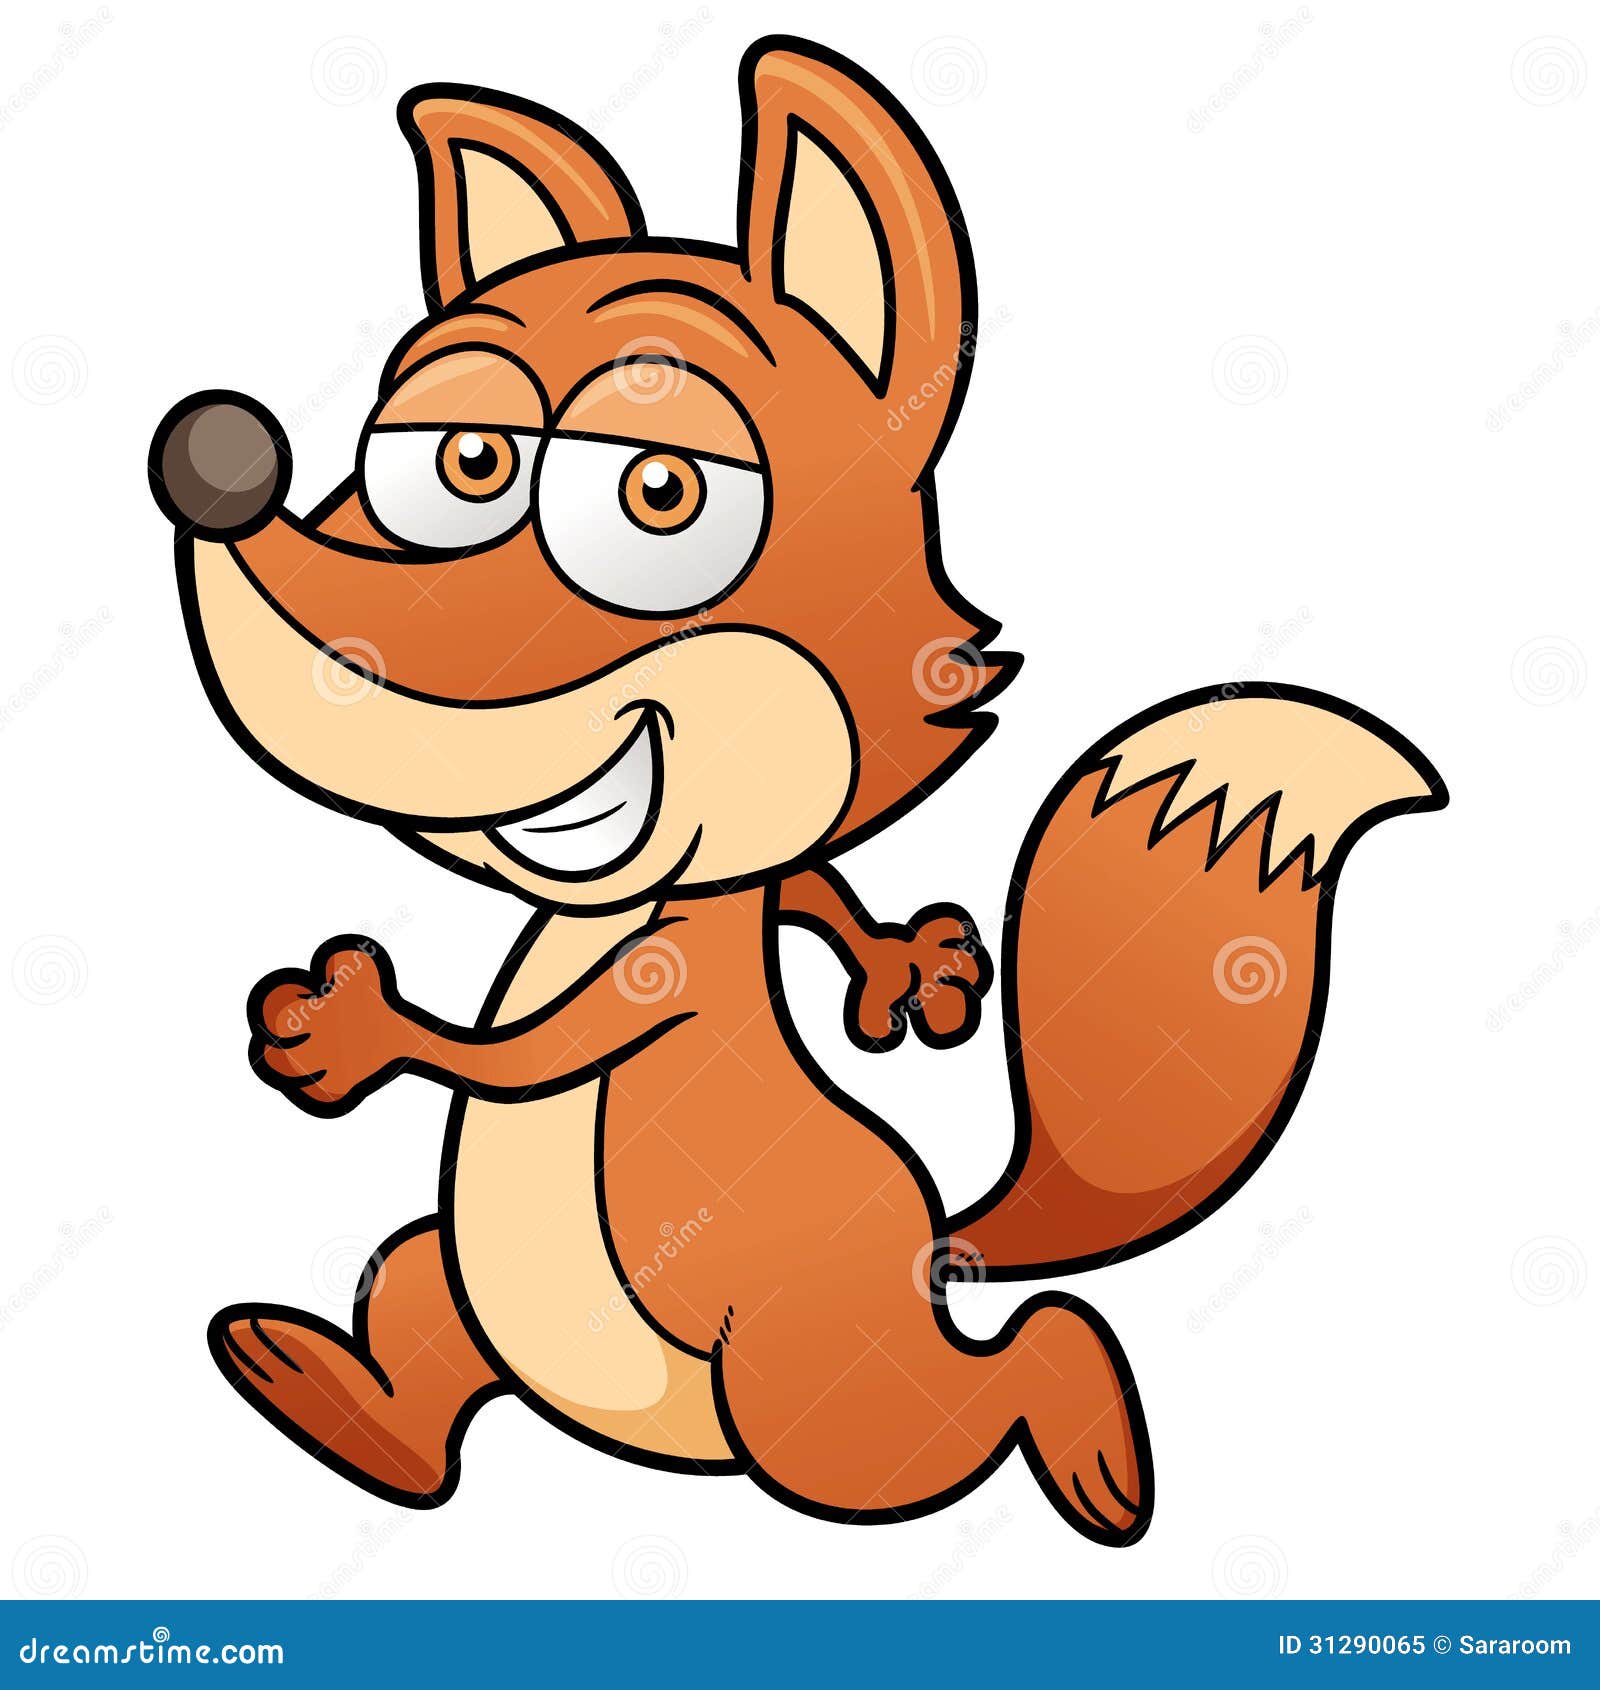 cartoon clipart of a fox - photo #34